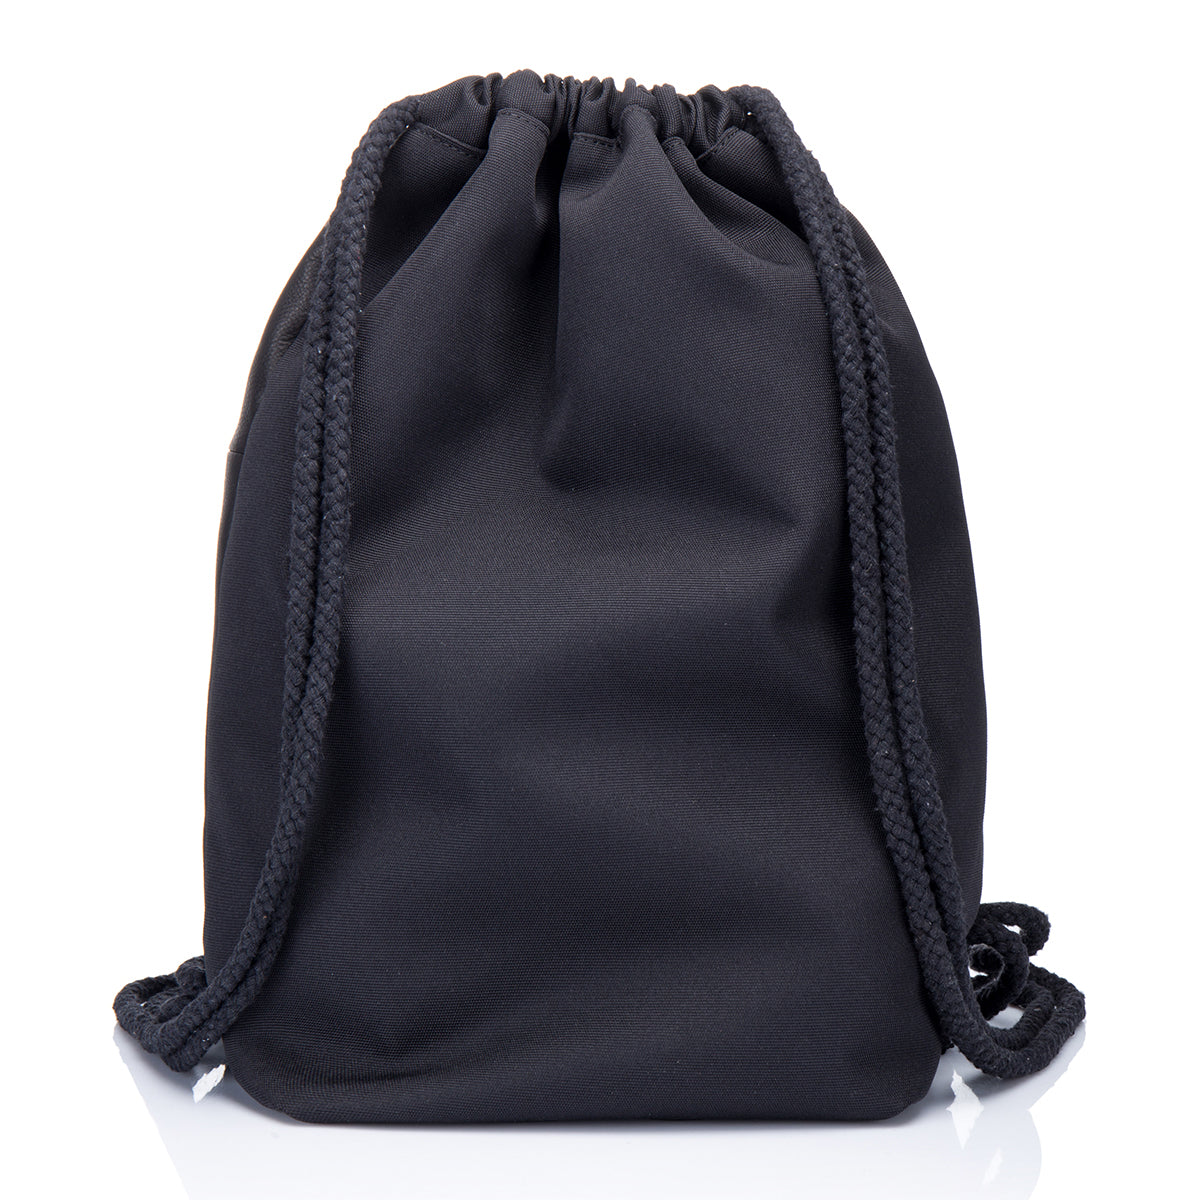 EnzoDesign Unisex Leather Drawstring Cinch Backpack